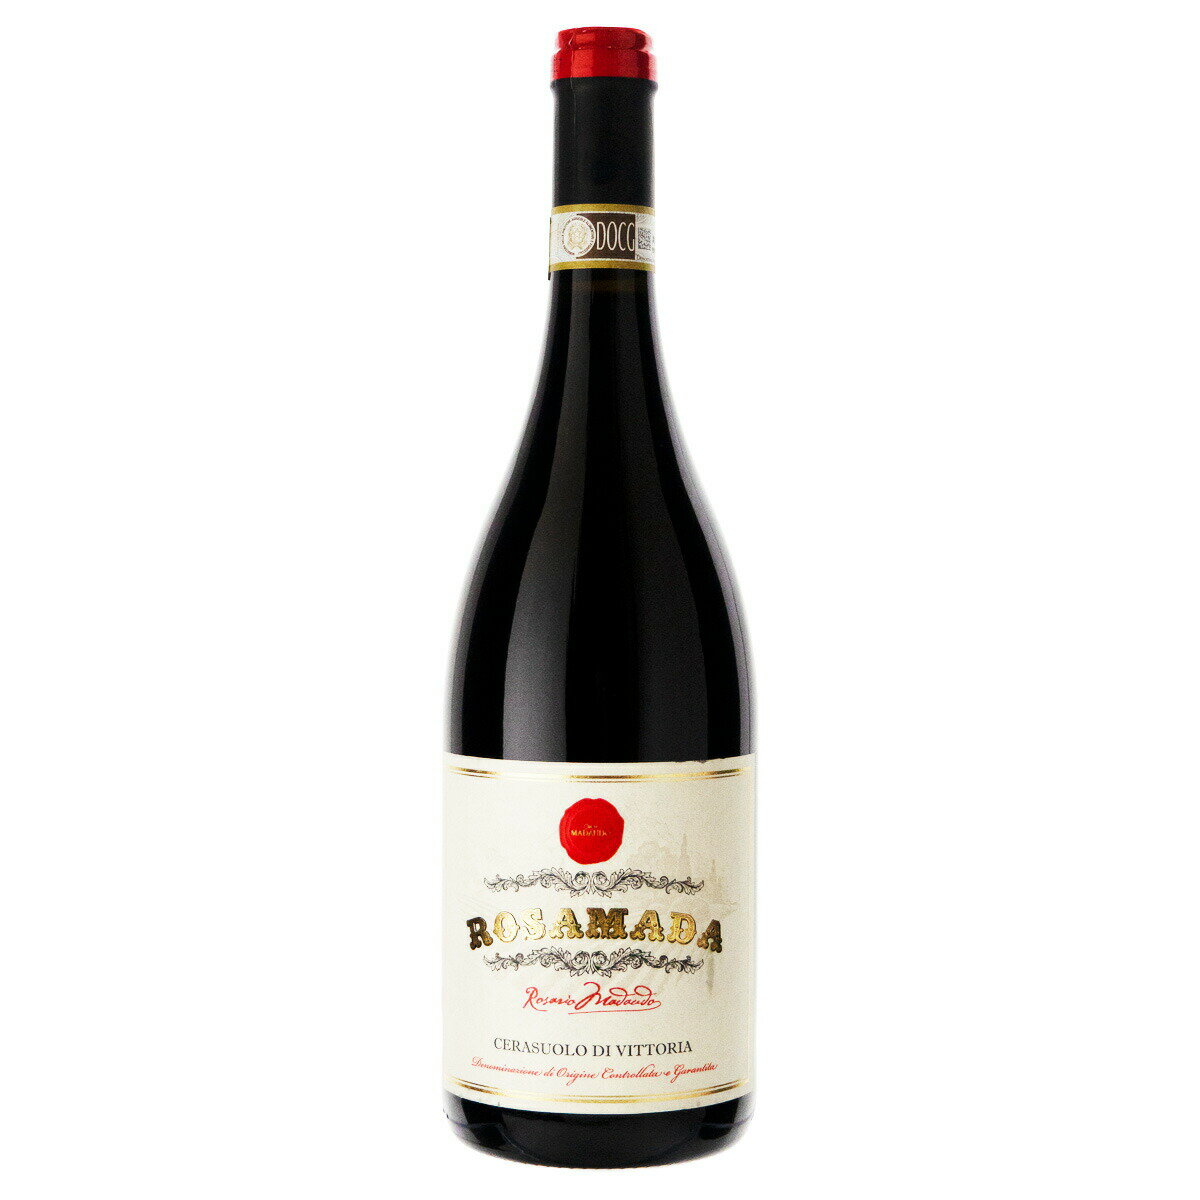 マダウド家の 4 世代はシチリア島のワイン造りの歴史と深く関わっています。1945年以前でも。 祖父アルフィオとその後の祖父ロザリオは、シチリア原産のブドウのみから生産されるワインの選択、瓶詰め、マーケティングを信じて投資した最初の人物の一人でした。 アルフィオとアンドレア 長年にわたりワイナリーの指揮を執りながら、彼らは人的資源、マーケティング、テクノロジーに投資してきました。その結果、現在ではシチリア島の参考ワイナリーの 1 つがヴィラフランカ ティレーナ本社に置かれています。 持続可能性と透明性、品質の保護と地域の価値向上 これらは、ほぼ 70 年間にわたってマダウドの生産哲学の基礎となってきました。「シチリアの肥沃な土地から最高の品質を抽出する」ことにより、ブドウ畑の大きな特徴を強調し、その特徴を解釈し、鋼鉄から木材まで、オートクレーブでのスパークリングワイン製造から瓶内発酵まで、さまざまな生産技術を通じてそれらを弱めます。それぞれのブドウの個性を最大限に活かします。 ワイナリーは長年にわたり、人的資源、技術、コミュニケーションに投資してきました。今日、ヴィラフランカ ティレーナ (メイン州) の本社に到着し、1 時間あたり約 8,000 本、年間平均で約 8,000 本のボトルの生産を可能にする高度な技術システムと設備を備えました。 400万本のIGT、DOC、DOCG、スパークリングワイン、スパークリングワインがイタリア国内外で大規模流通およびho.re.caチャネルに存在します。 商品説明 NameRosamada Cerasuolo di Vittoria 生産地イタリア・シチリア州 生産者カンティーネ・マダウド 生産年2014 タイプ赤ワイン ブドウ品種フラッパート、ネロ・ダーヴォラ 味わいミディアムボディ アルコール度数13.5% 内容量750ml